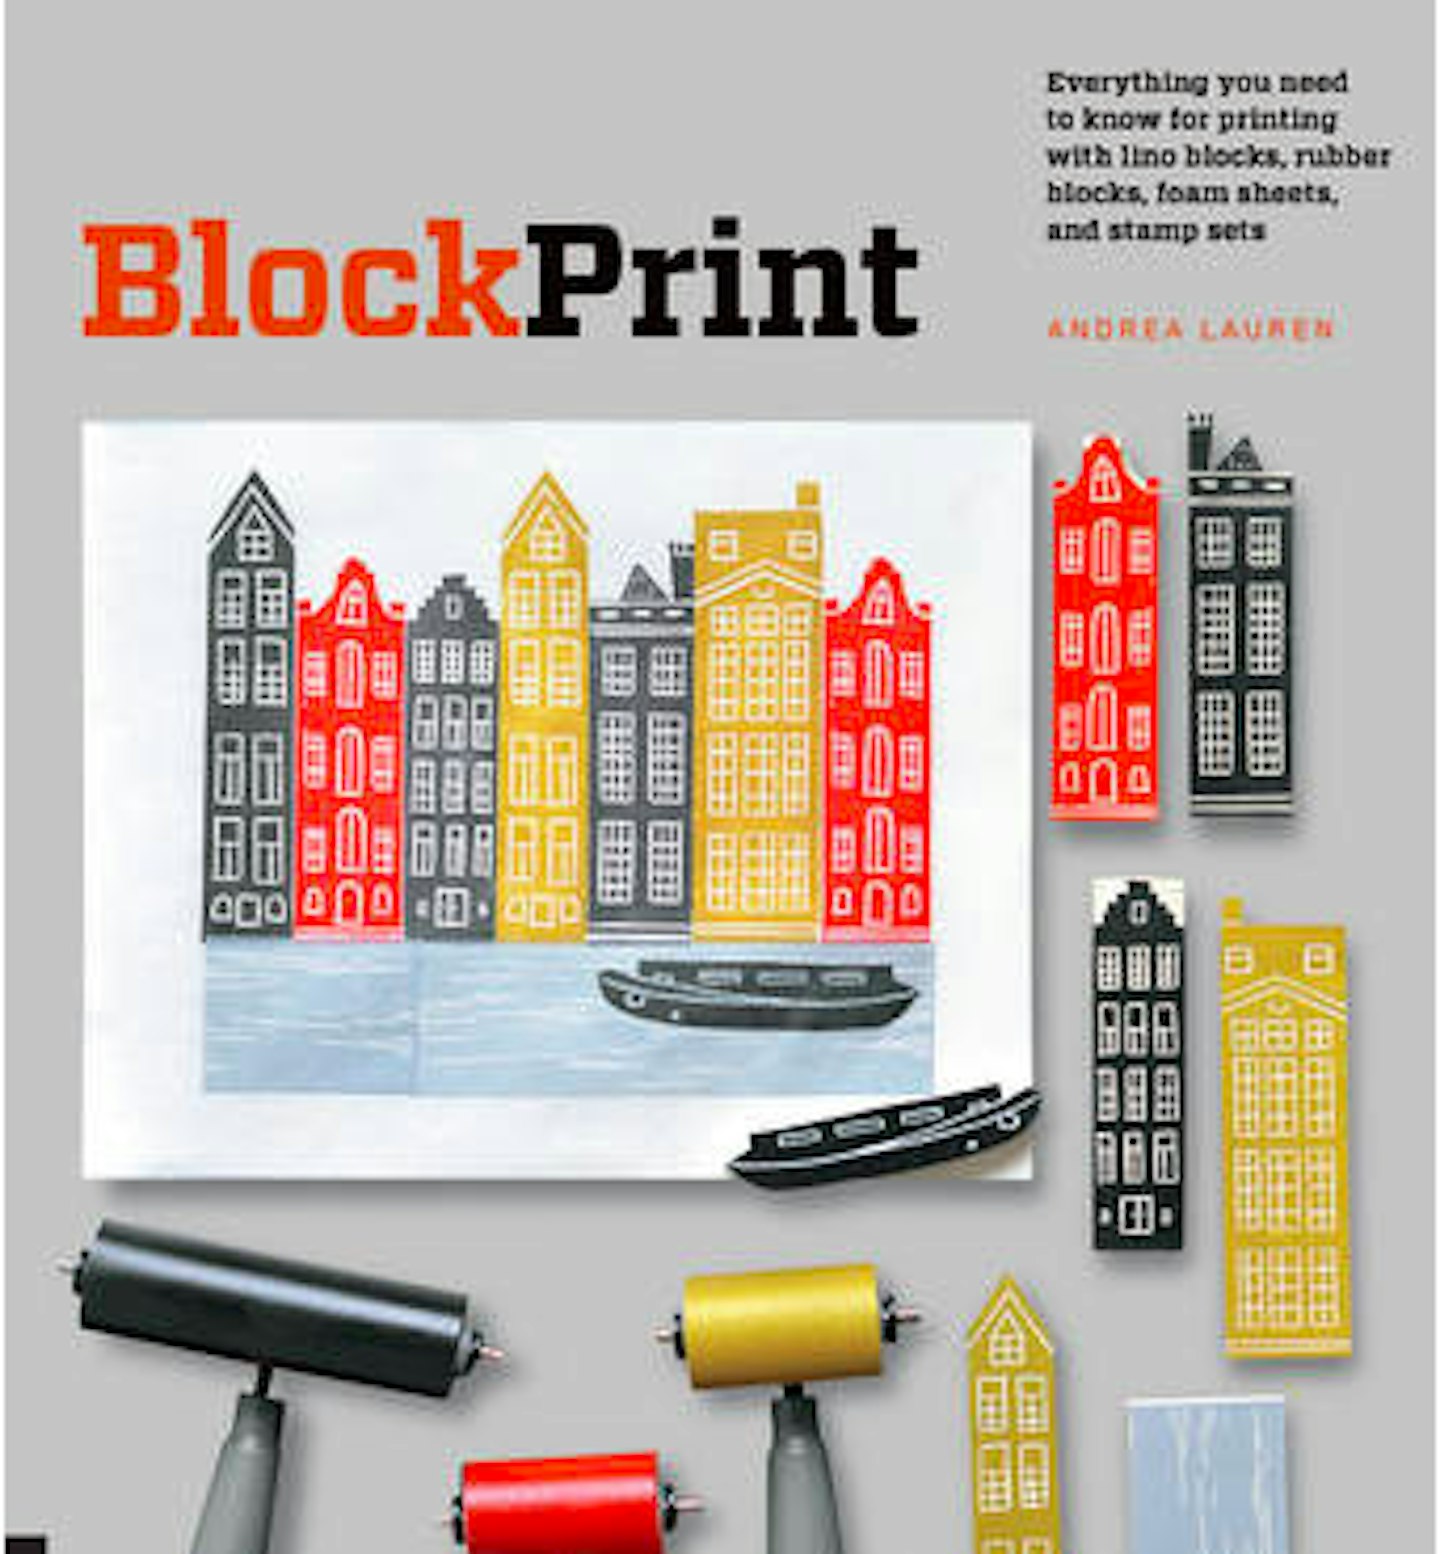 block-printing-tools